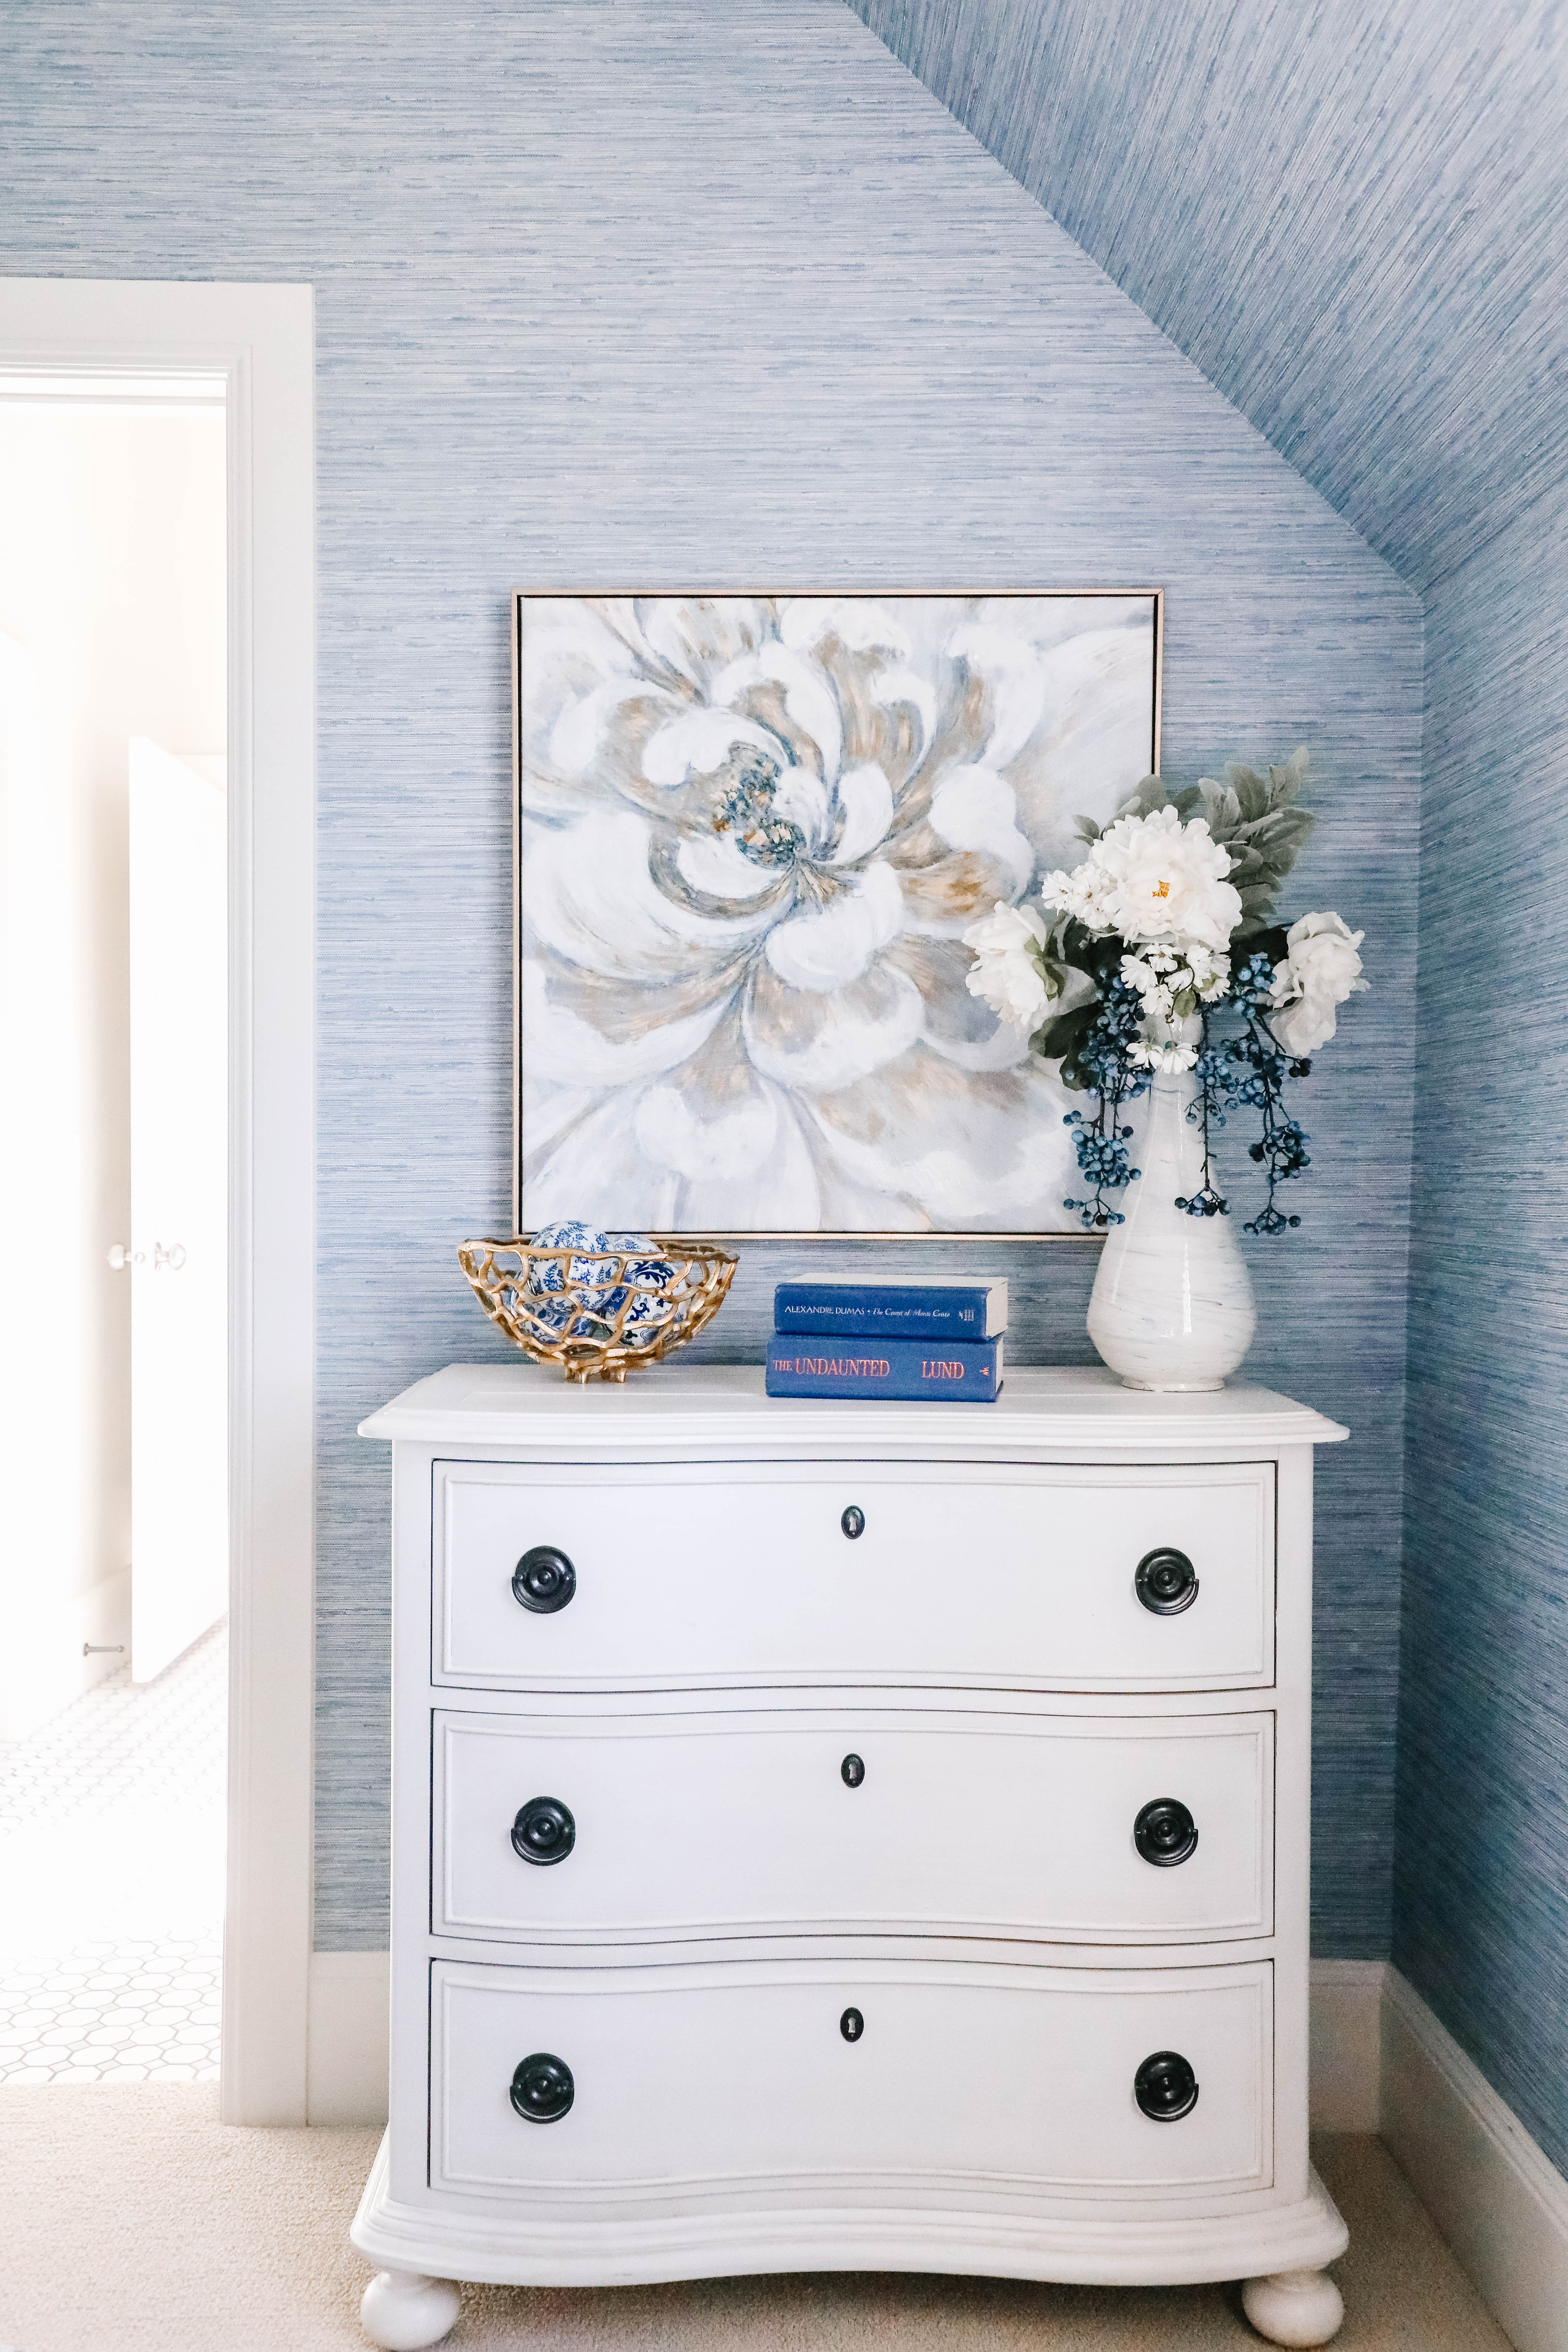 dresser artwork and floral arrangement